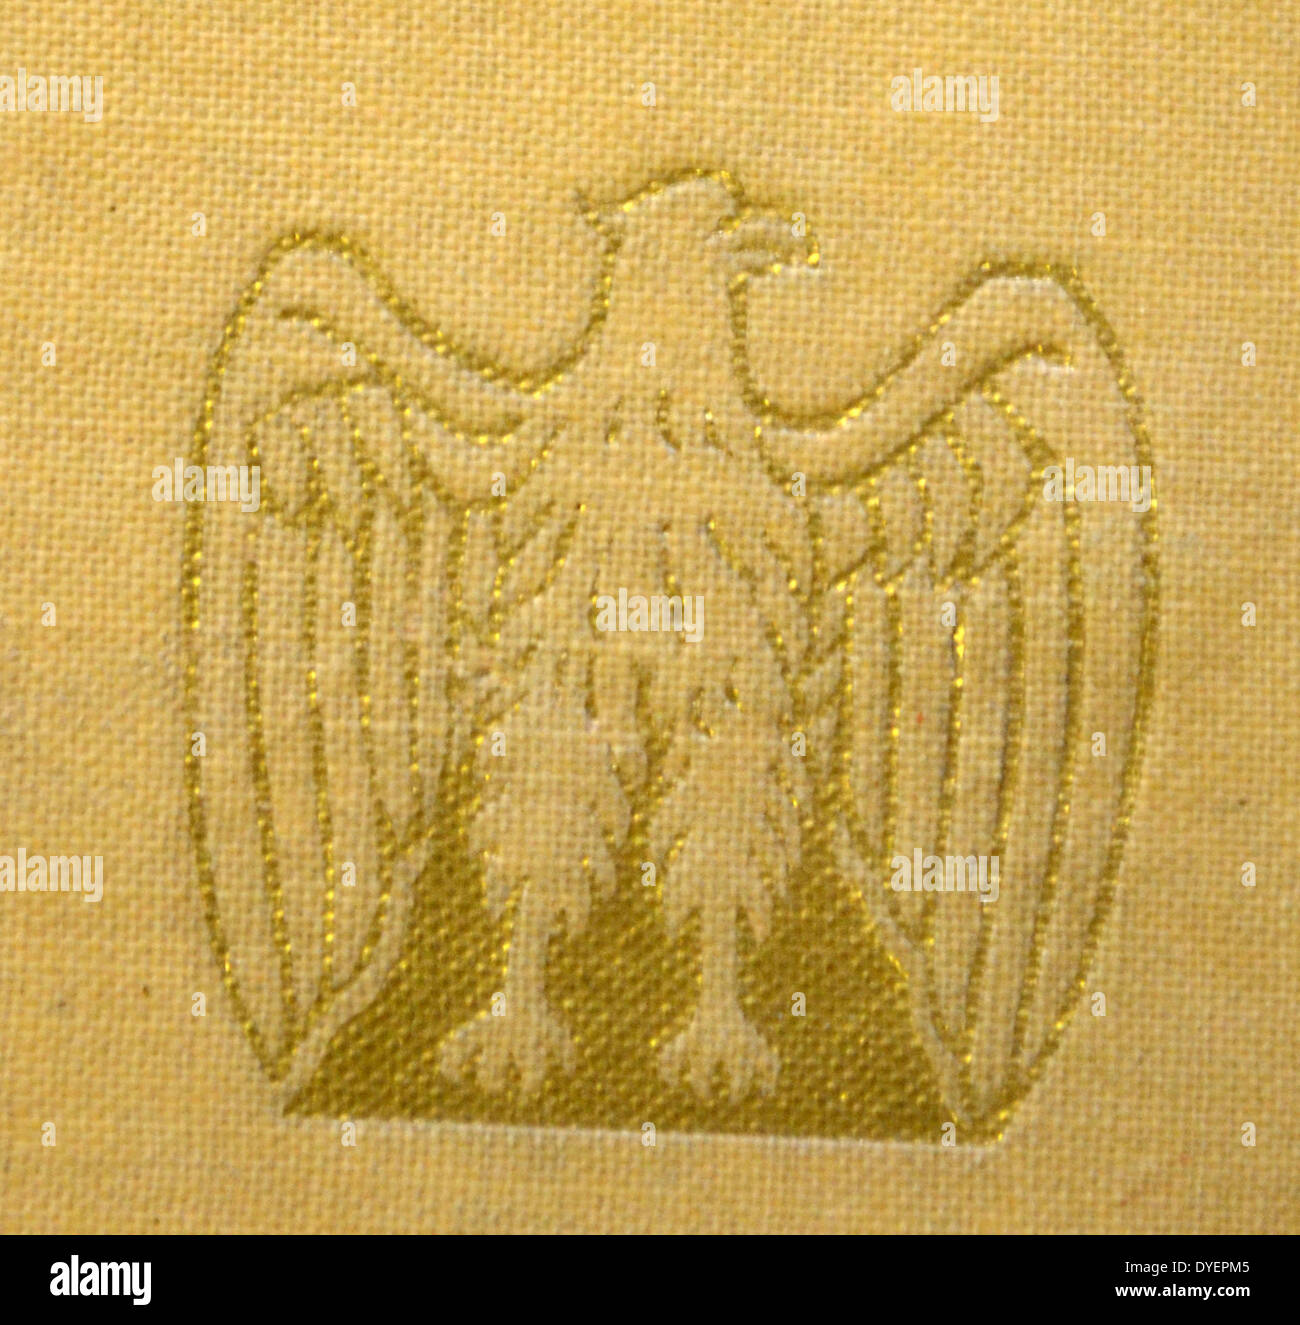 Emblème de l'aigle doré en arborant sur un livre commémoratif célébrant la montée du fascisme italien 1929 Banque D'Images